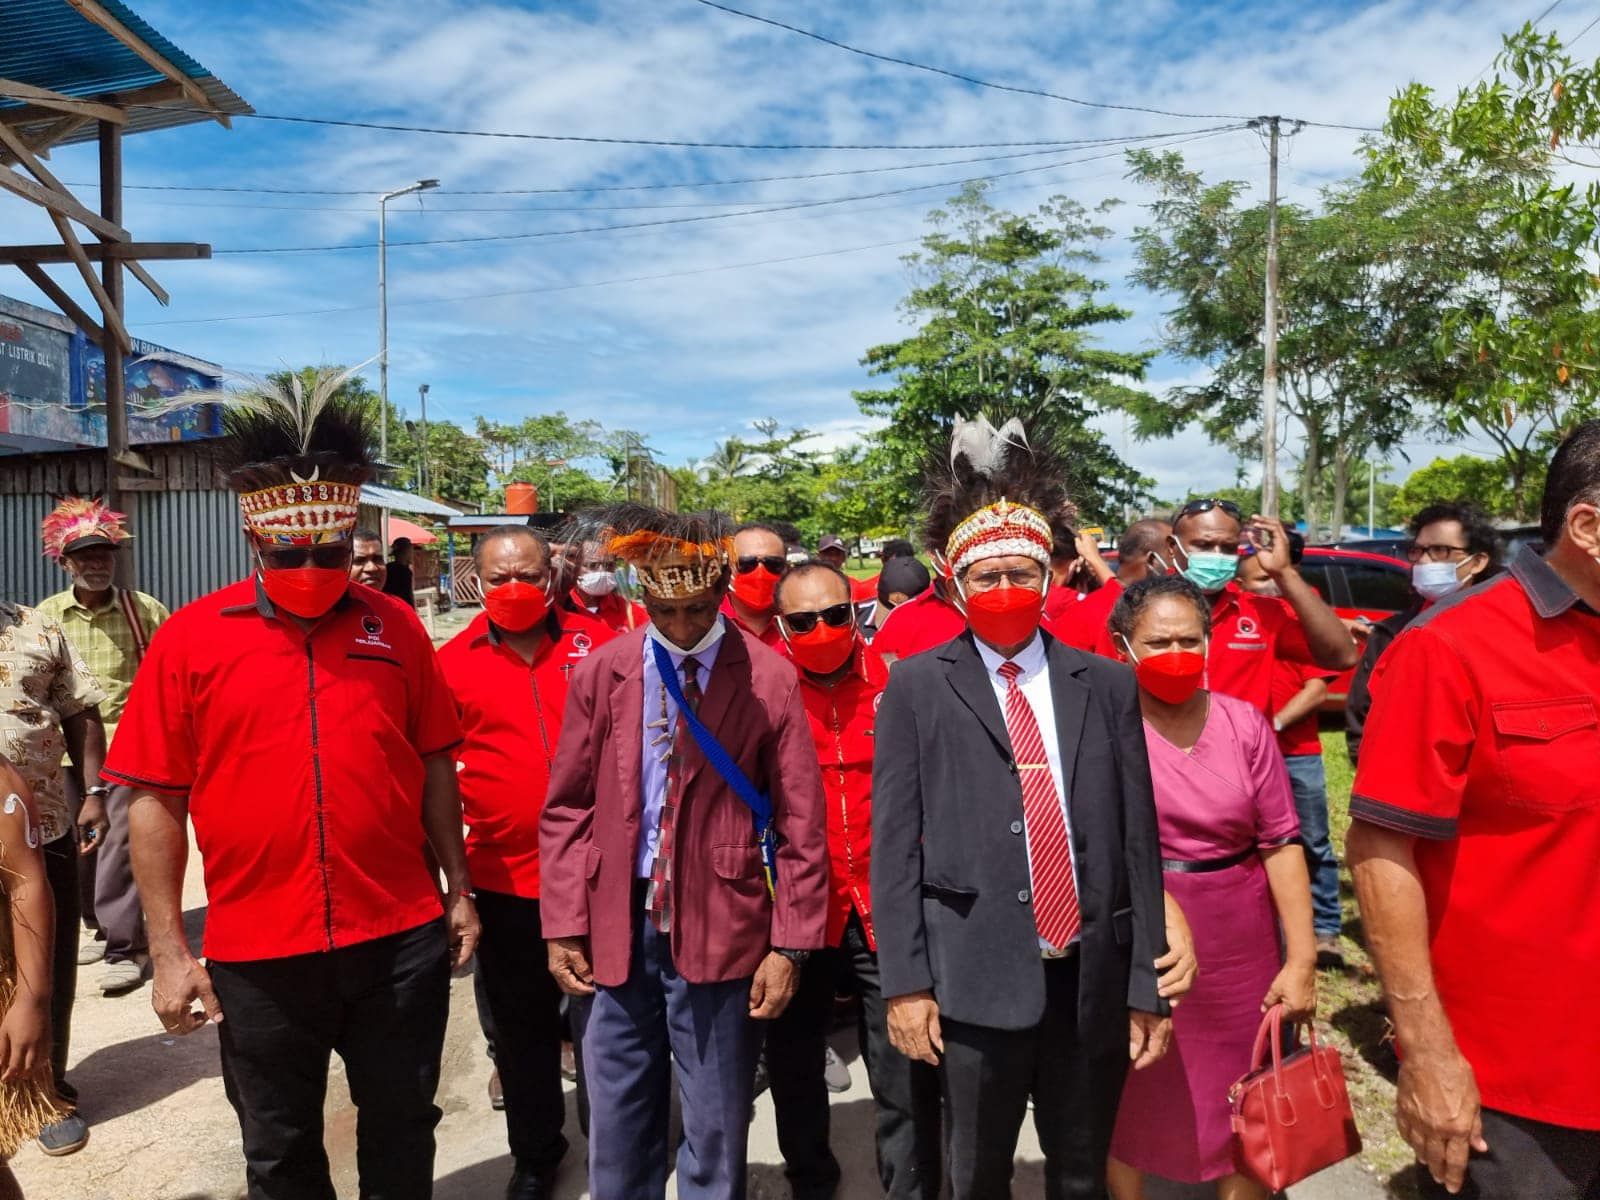 Wakil Bupati Biak Numfor saat berjalan bersama para pendukungnya di Biak Numfor., Senin, 14 Februari 2022.